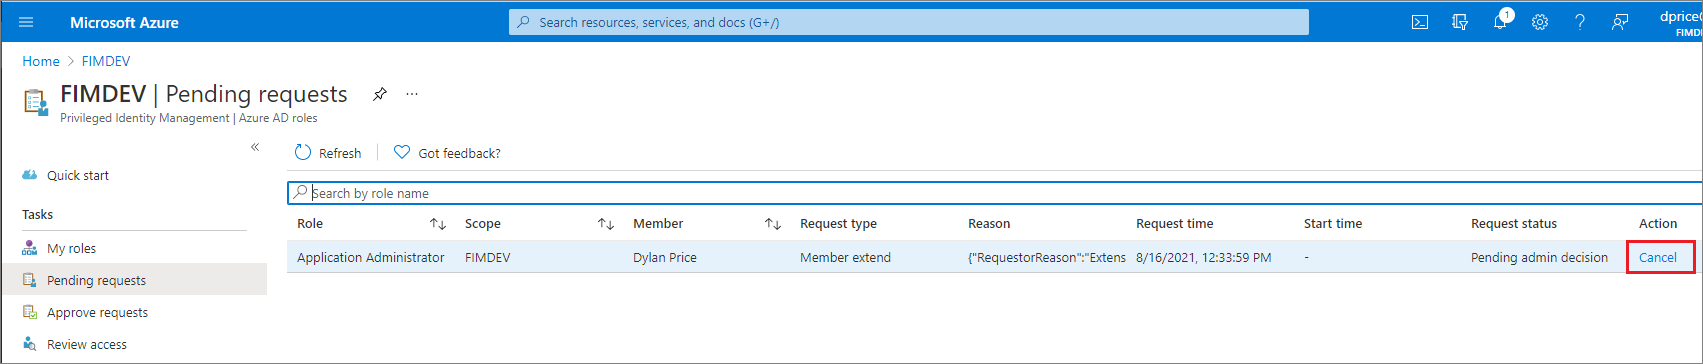 屏幕截图显示 Microsoft Entra 角色 -“待定的请求”页，其中列出了任何待处理的请求和一个“取消”链接。